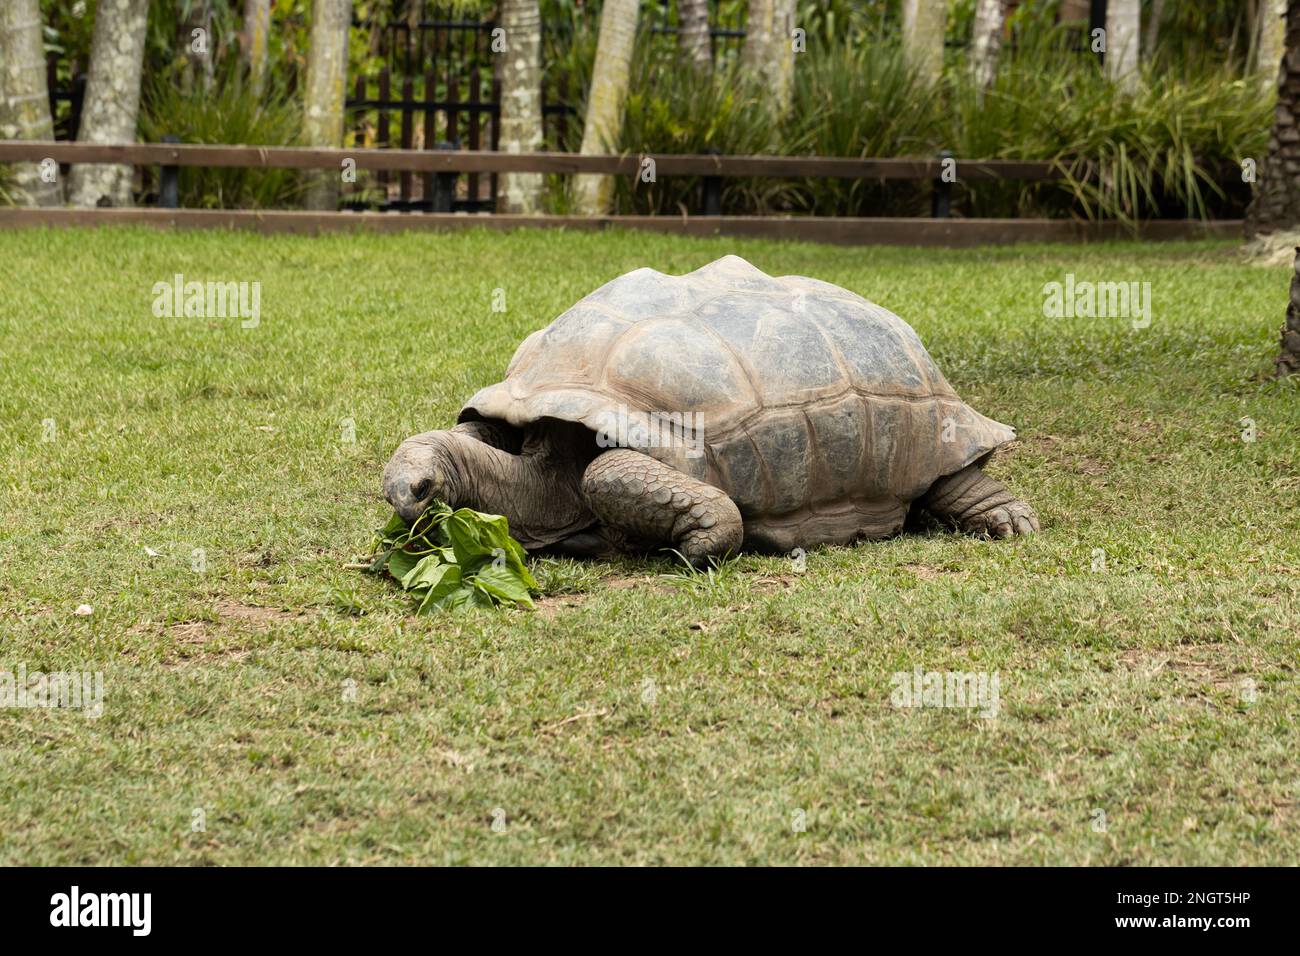 Una tortuga gigante vulnerable amenazada de aldabra (Aldabrachelys gigantea) que come planta de hibisco Foto de stock